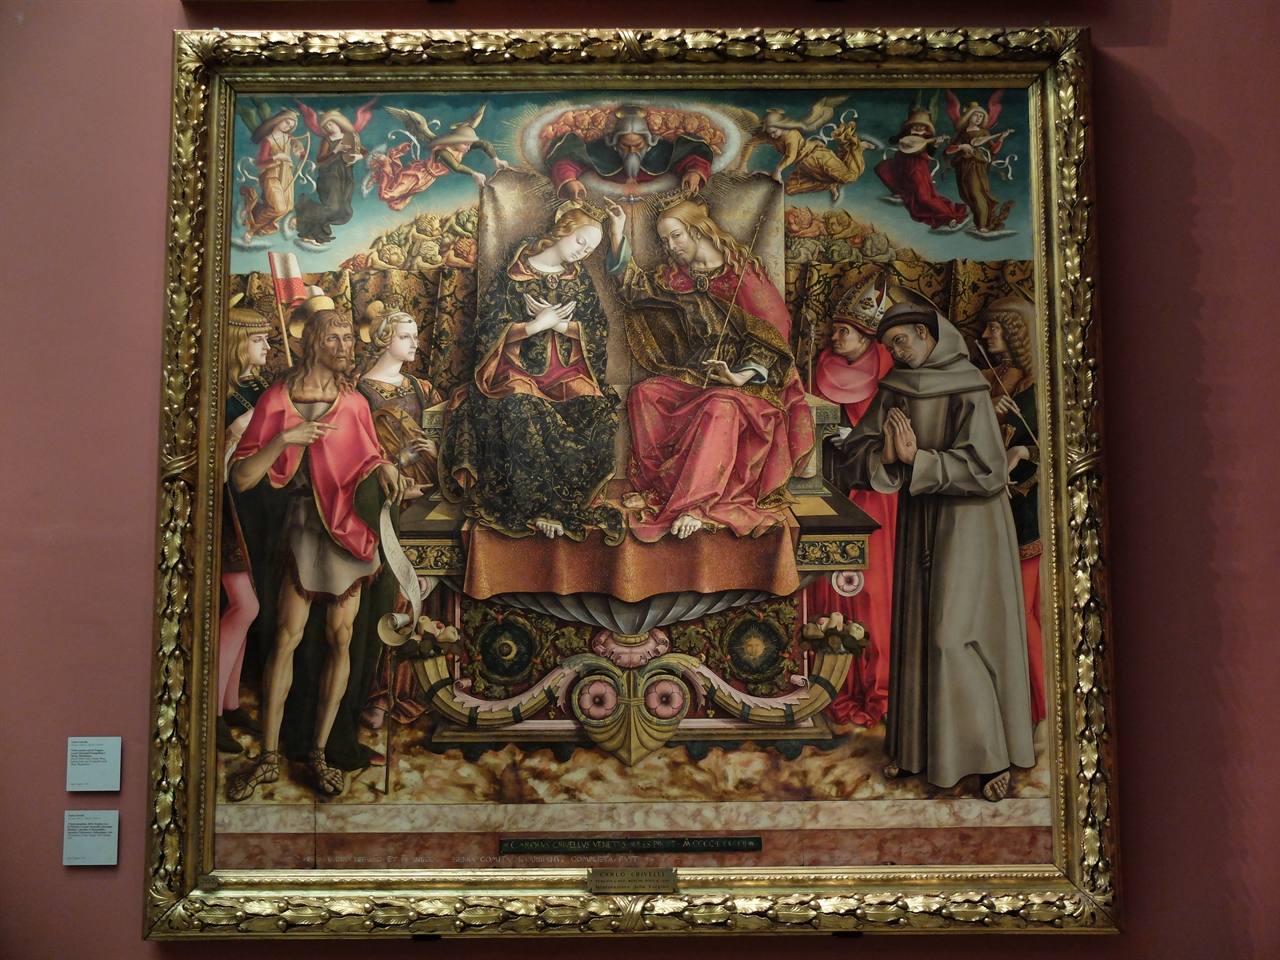 카를로 크리벨리, '성 삼위일체와 성모 마리아의 대관', 밀라노 브레라 미술관. 초기 베네치아 화파의 대표 작가 중 한 명인 크리벨리는 장식적인 경향의 국제고딕양식을 여전히 고수하고 있습니다.  